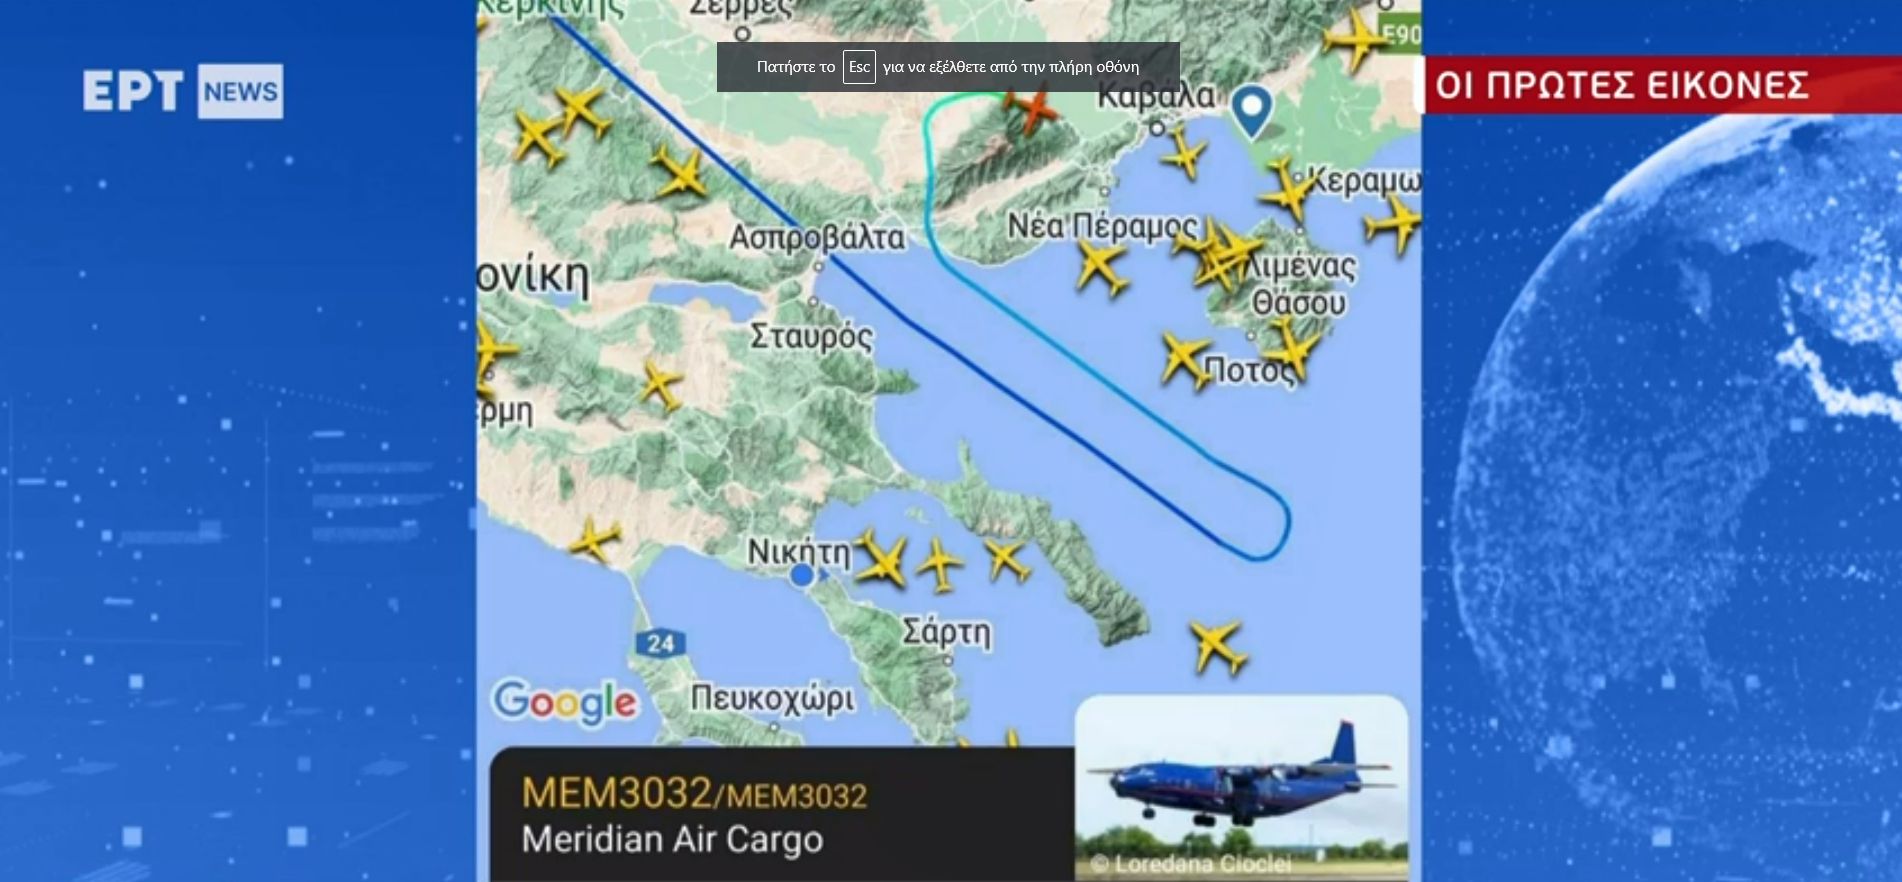 Український літак, який зазнав катастрофи у Греції, віз оборонний вантаж до Бангладеш – Міноборони Сербії